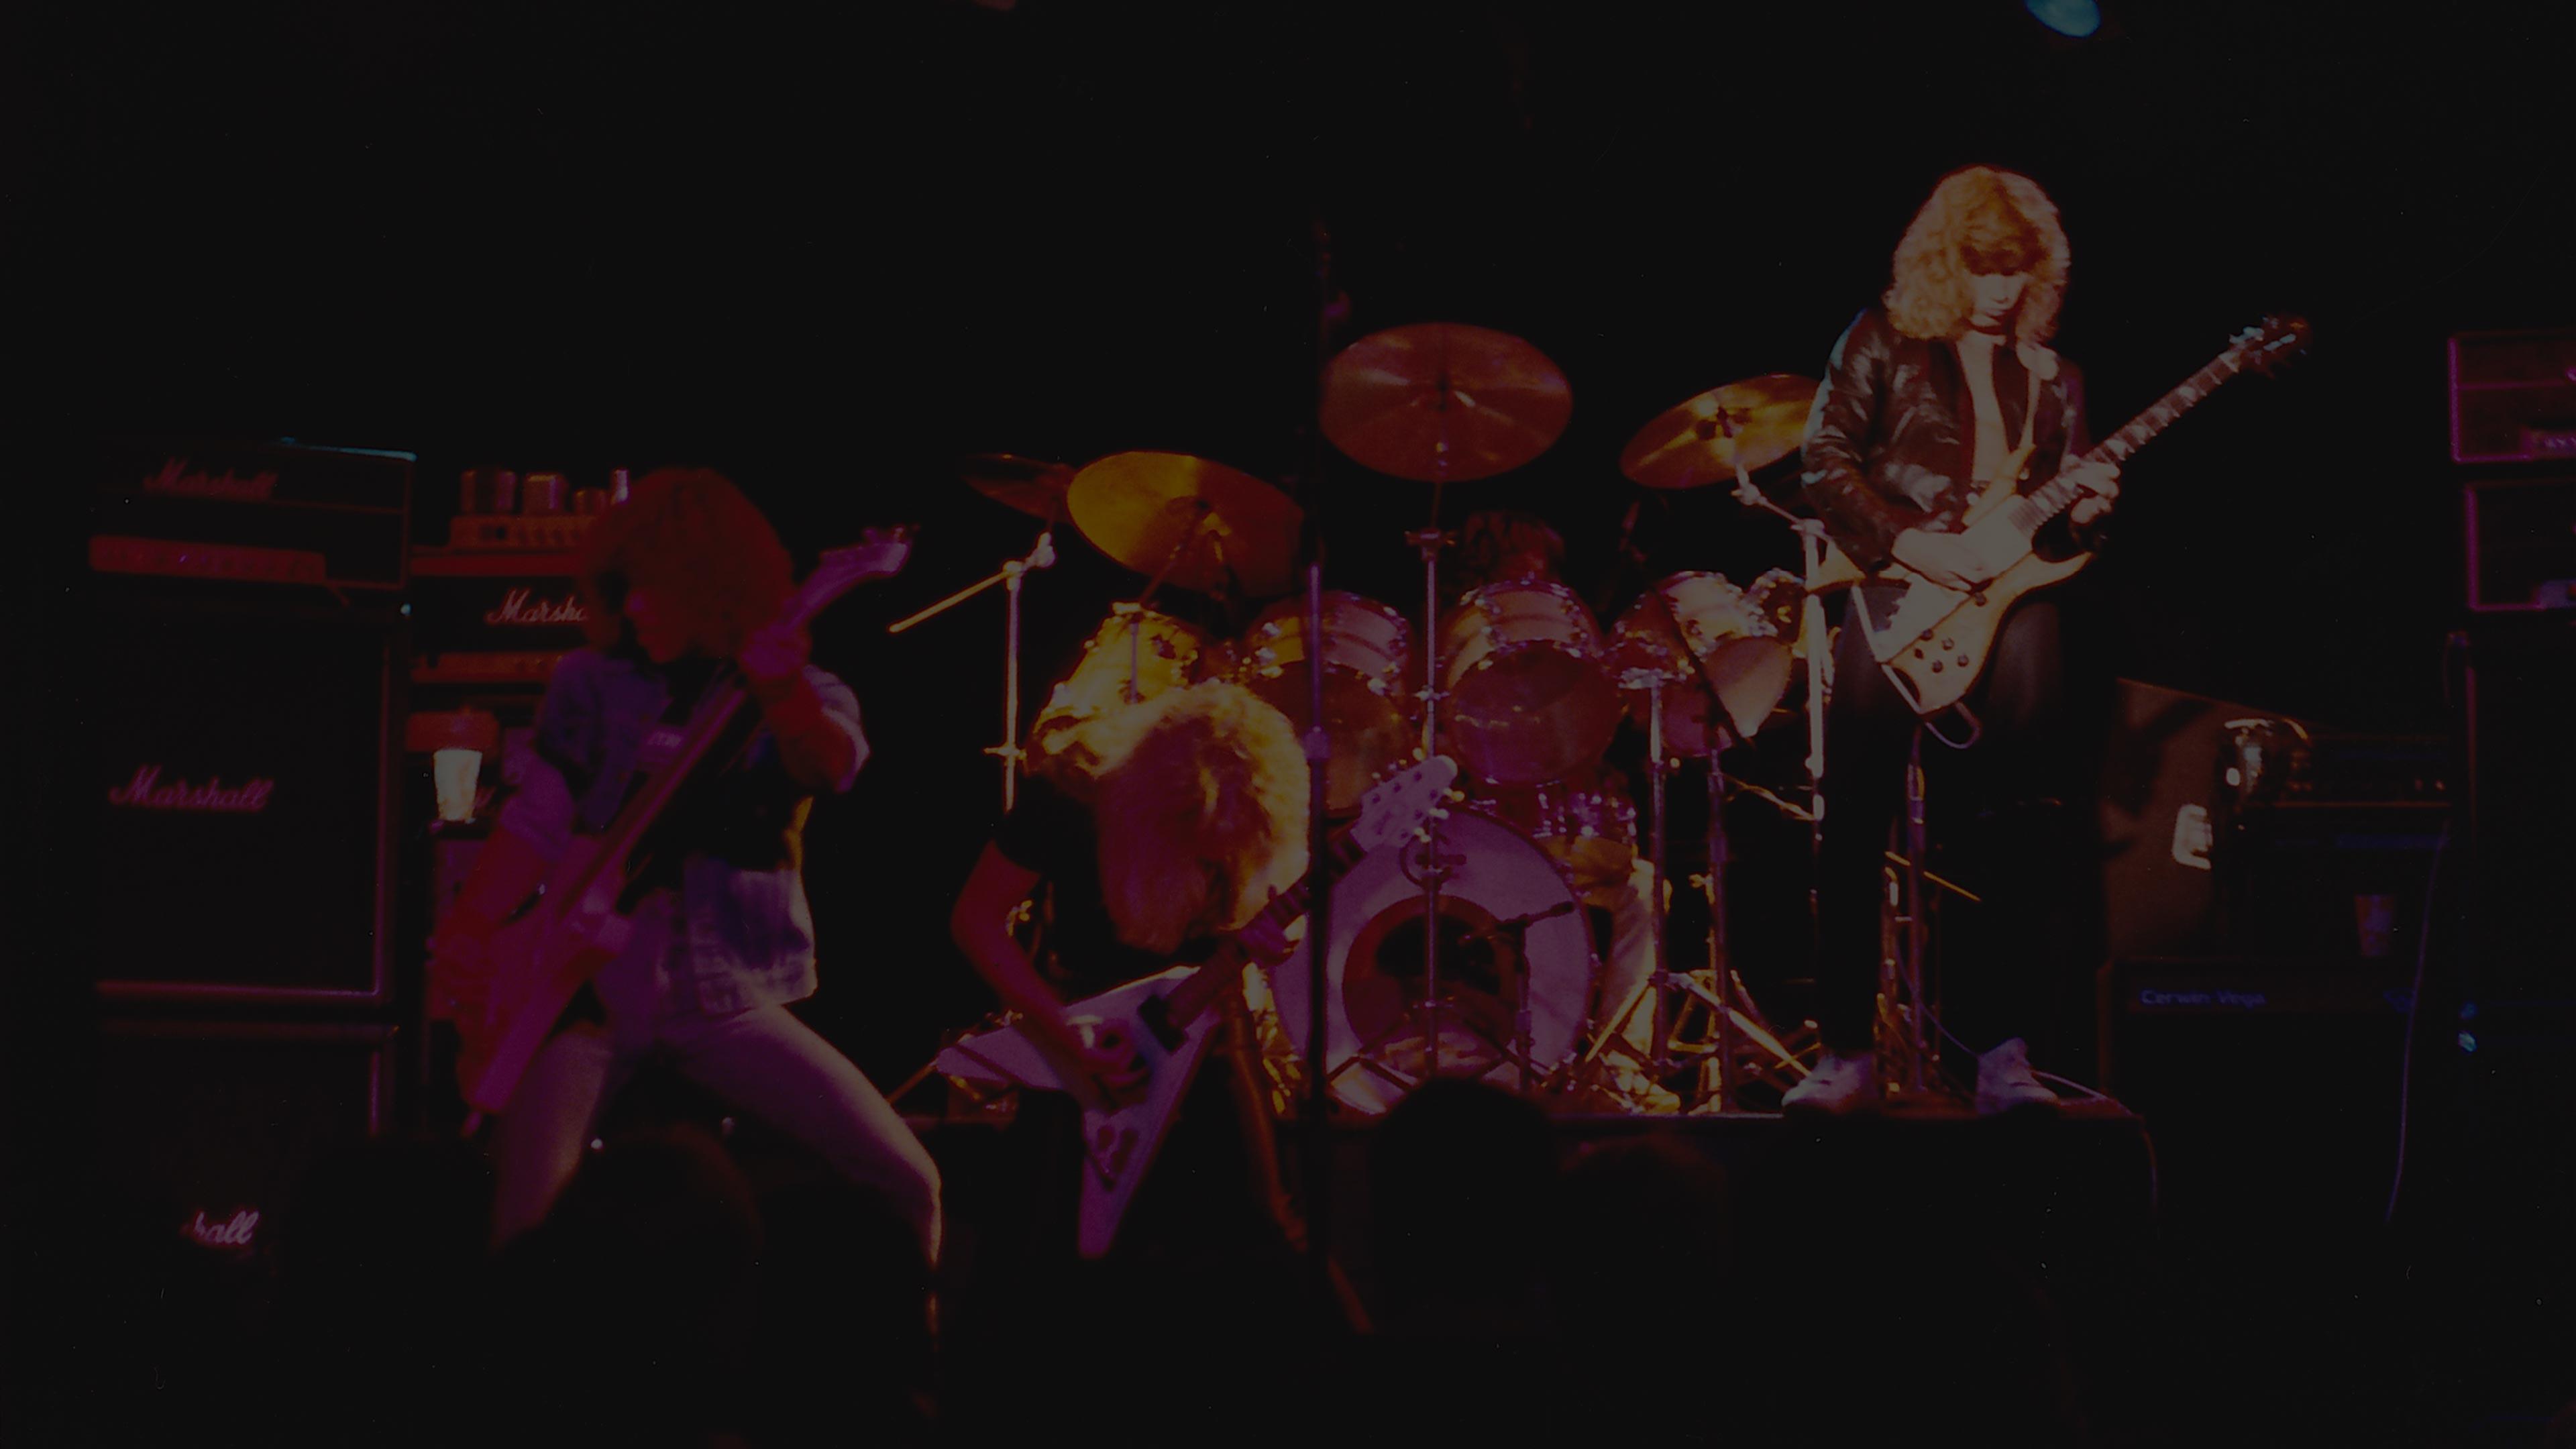 Metallica at Woodstock Concert Theatre in Anaheim, CA on October 1, 1982